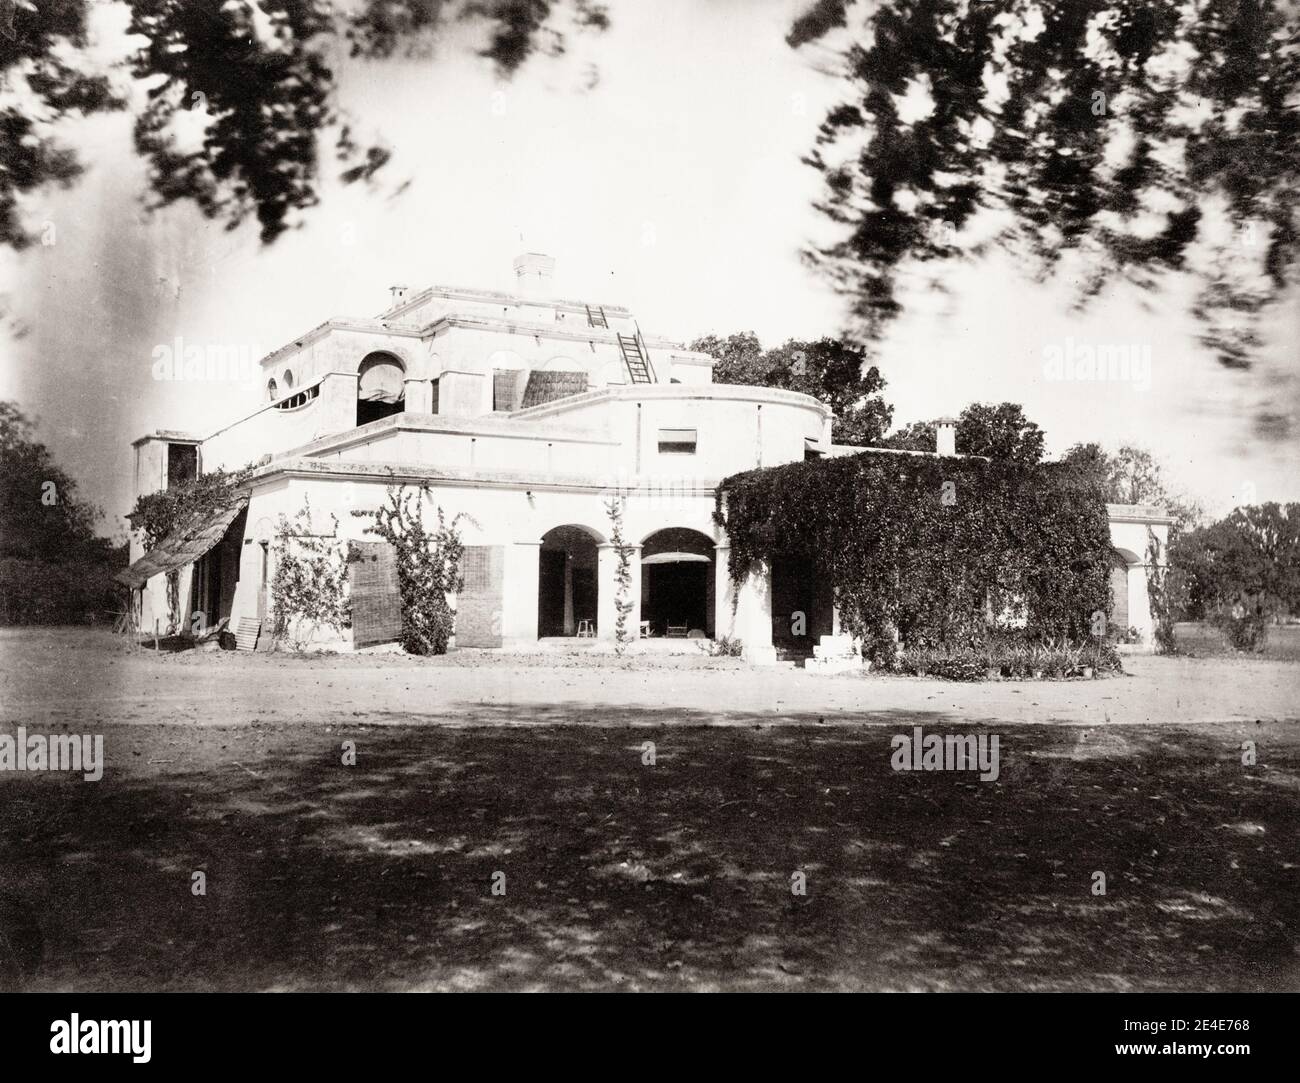 Fotografia d'epoca del XIX secolo: Casa europea a Faizabad, India. Laizabad è una città dell'India di 8.733 abitanti, situata nello stato federato dell'Utttar Pradesh. Foto Stock